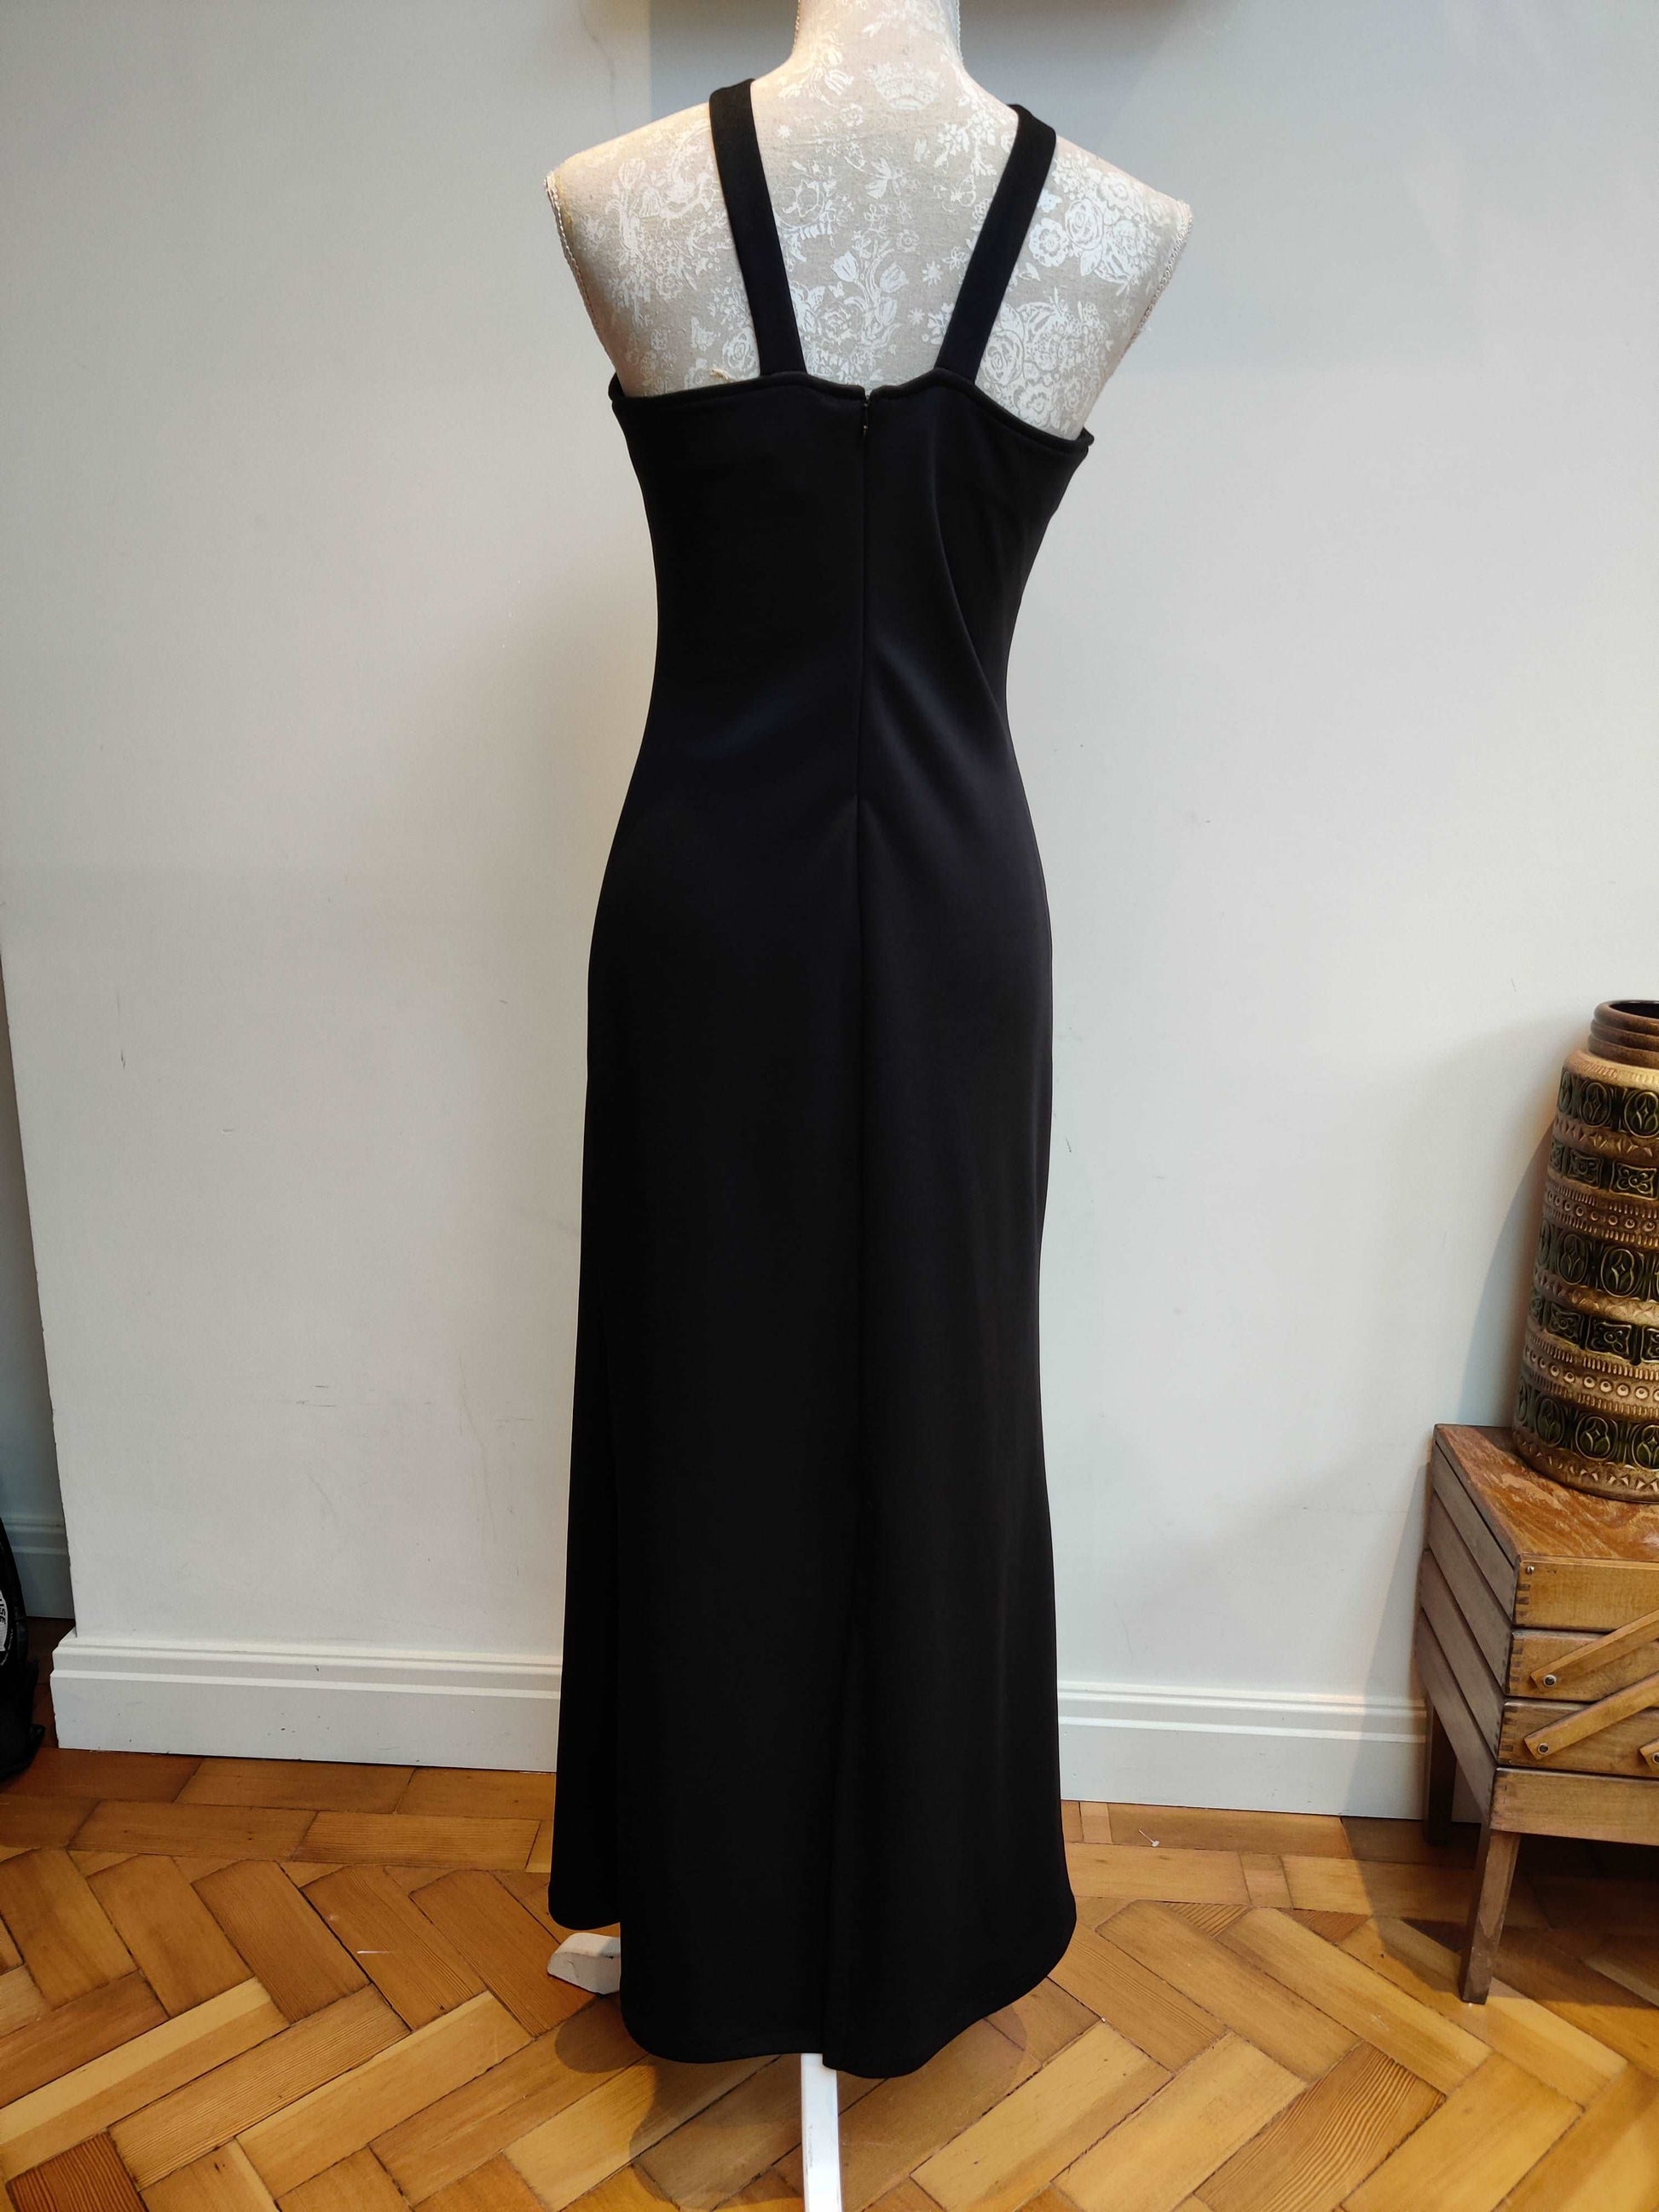 Halterneck style vintage maxi dress in black.